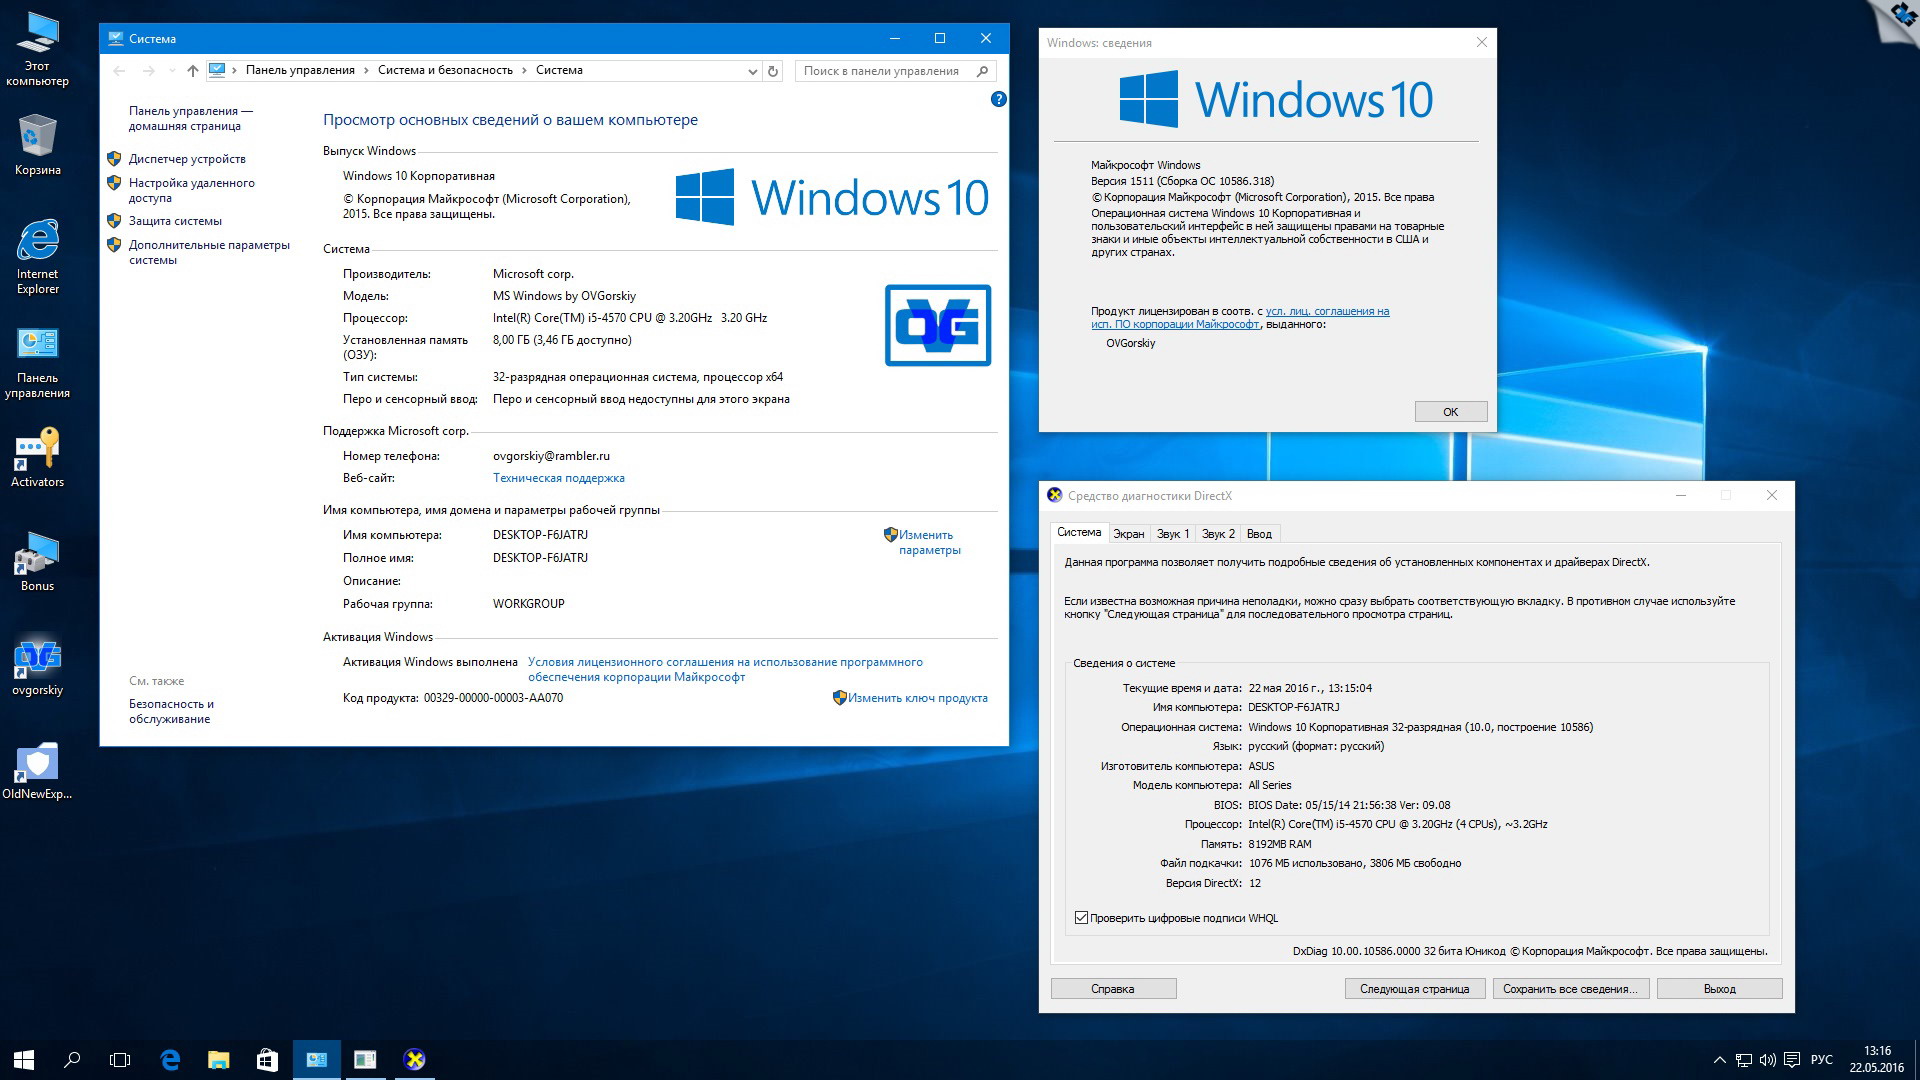 windows 10 pro x86x64 rtm 1511 10586